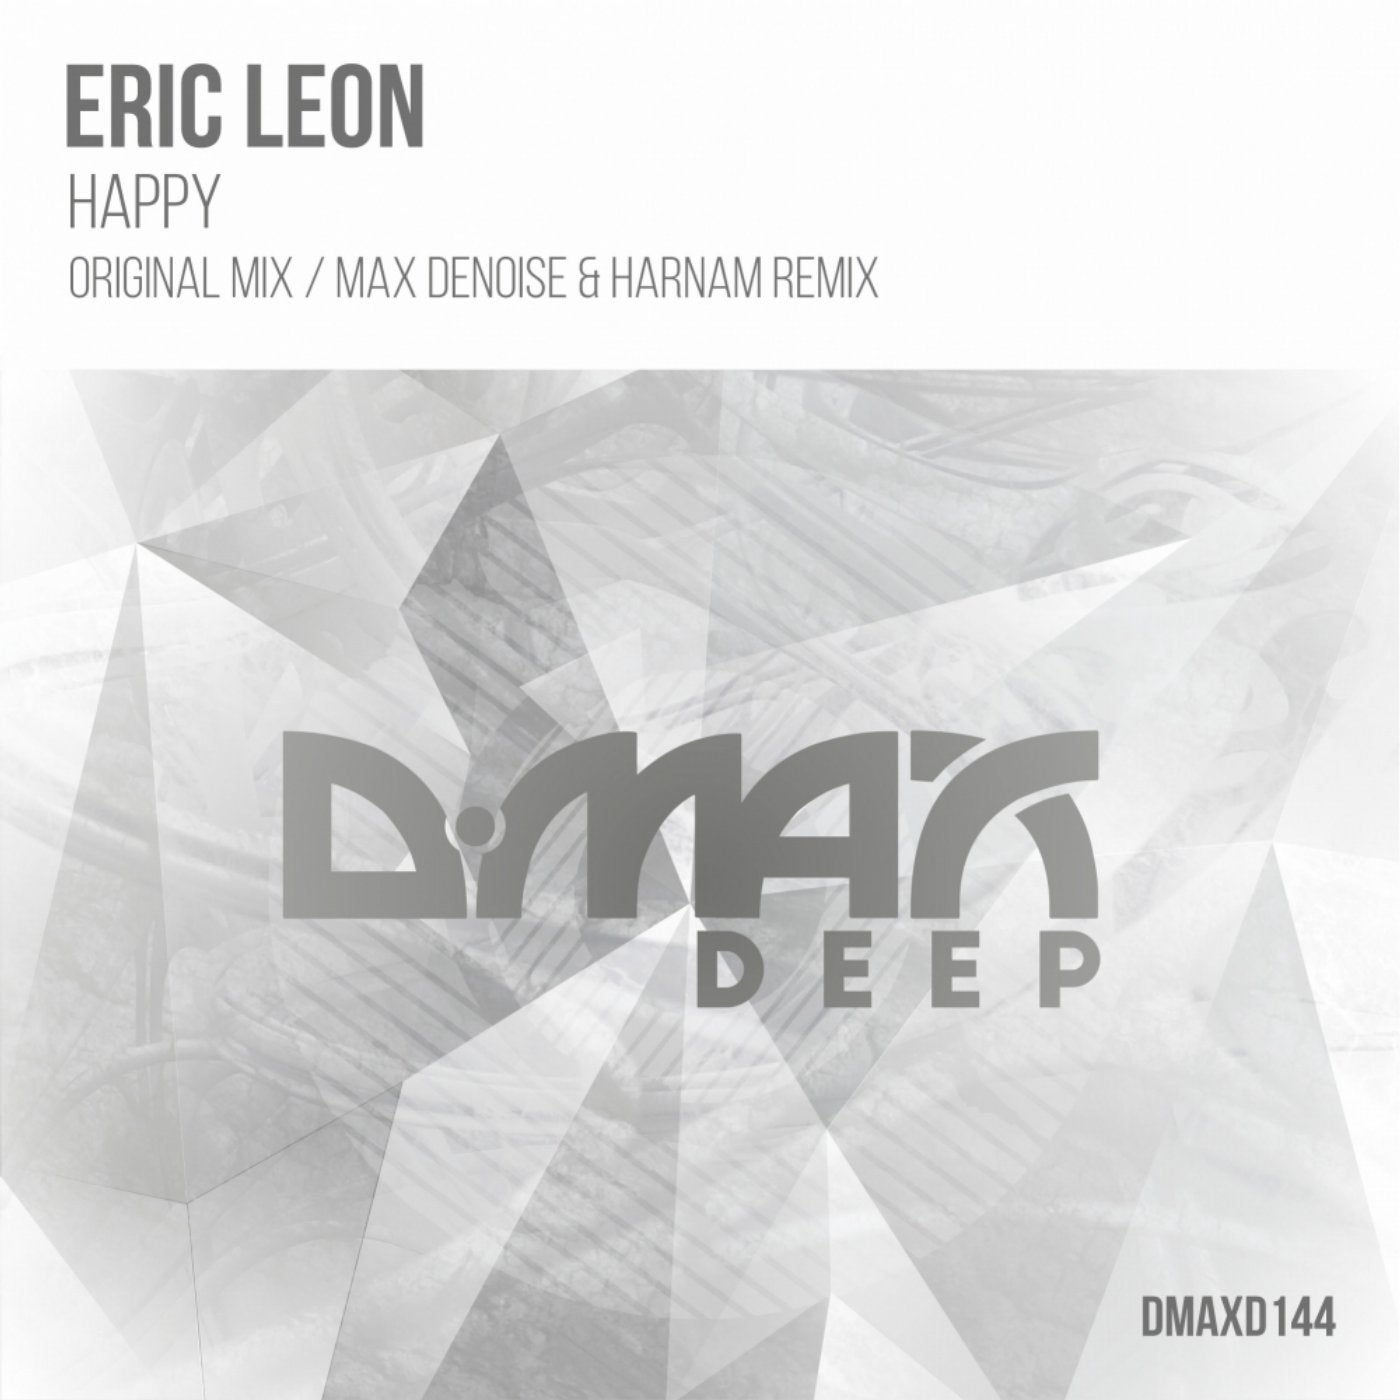 Eric Leon music download - Beatport